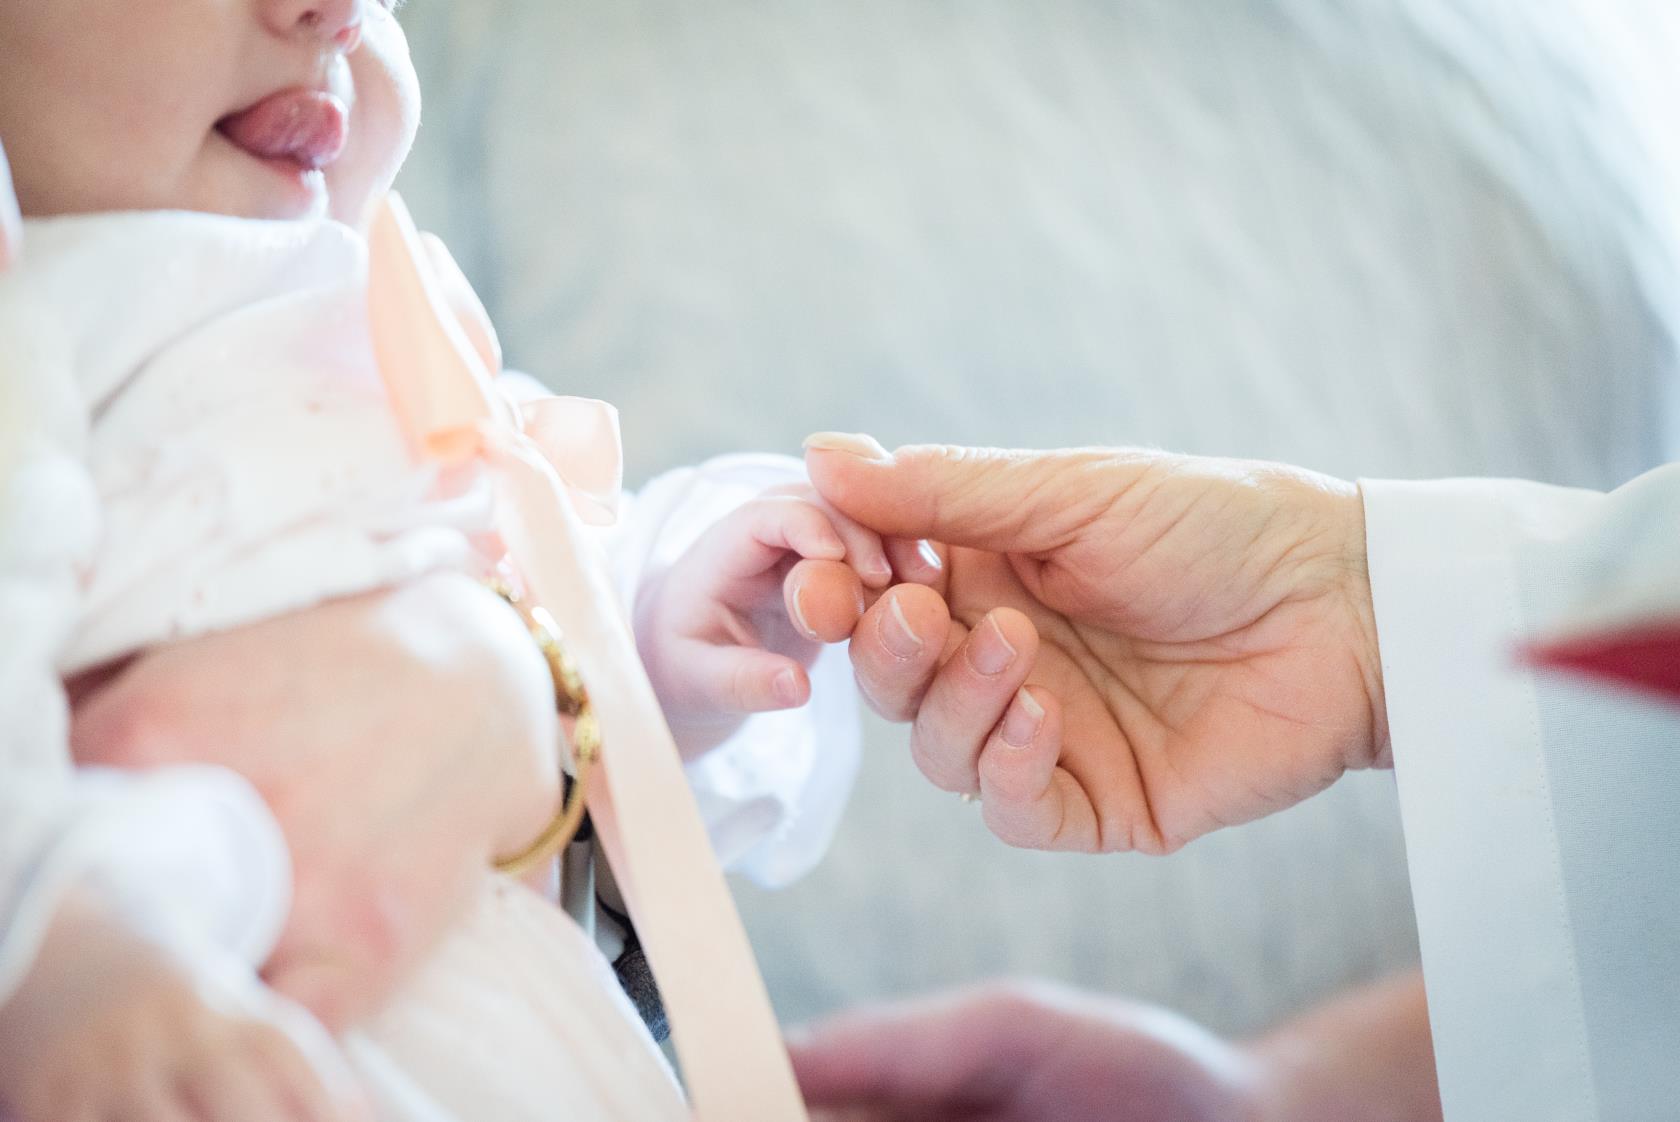 En vitklädd person håller i handen på en bebis i dopklänning.